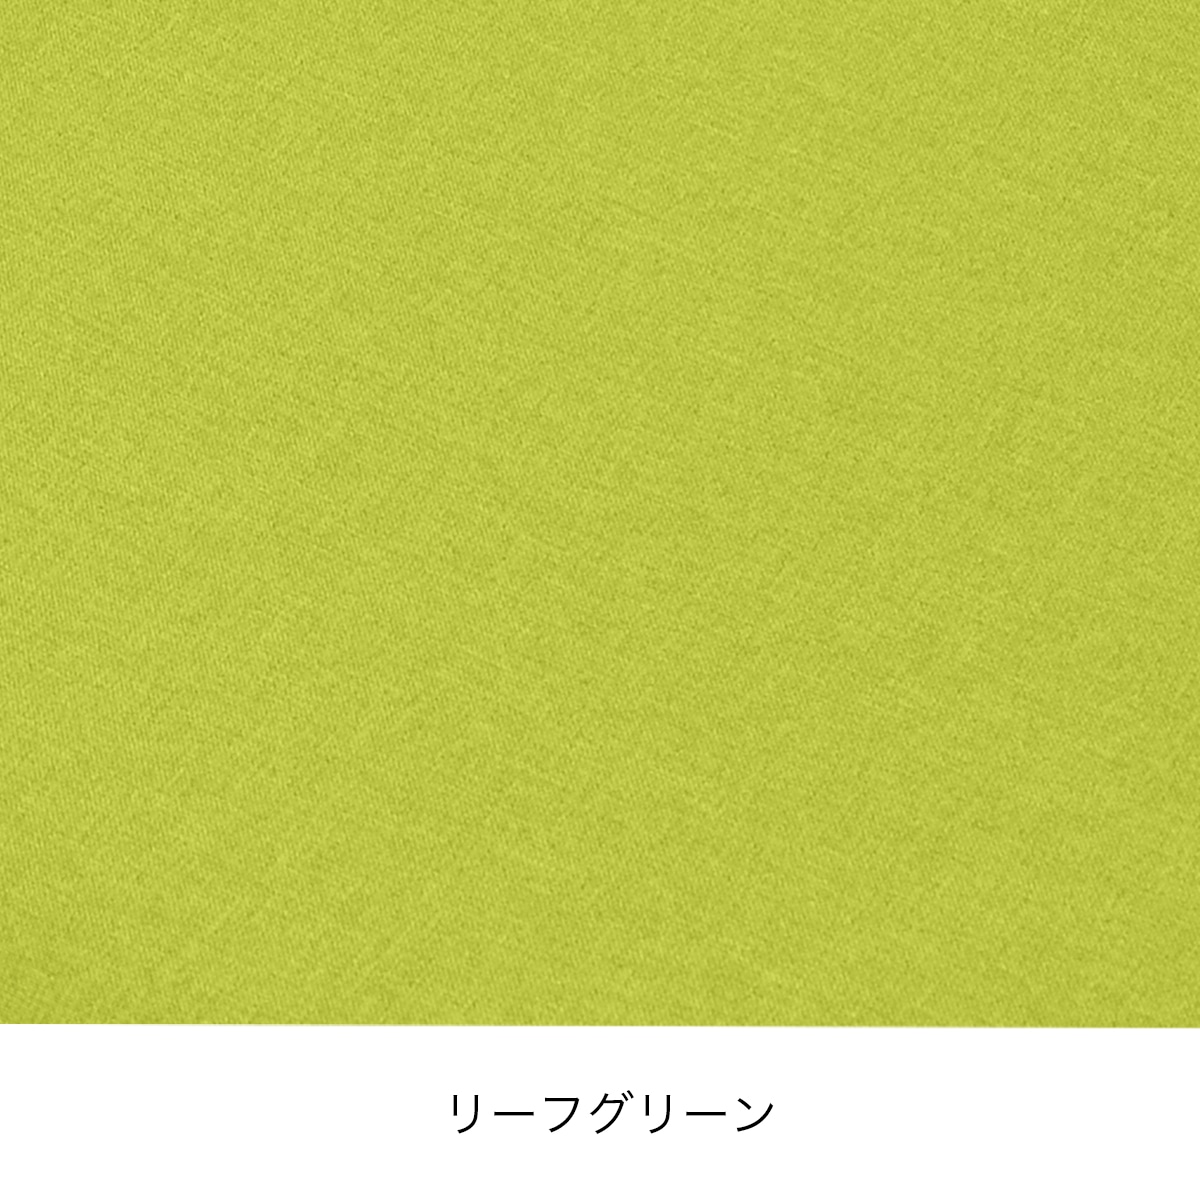 まるプニフィット専用カバー(春夏用)